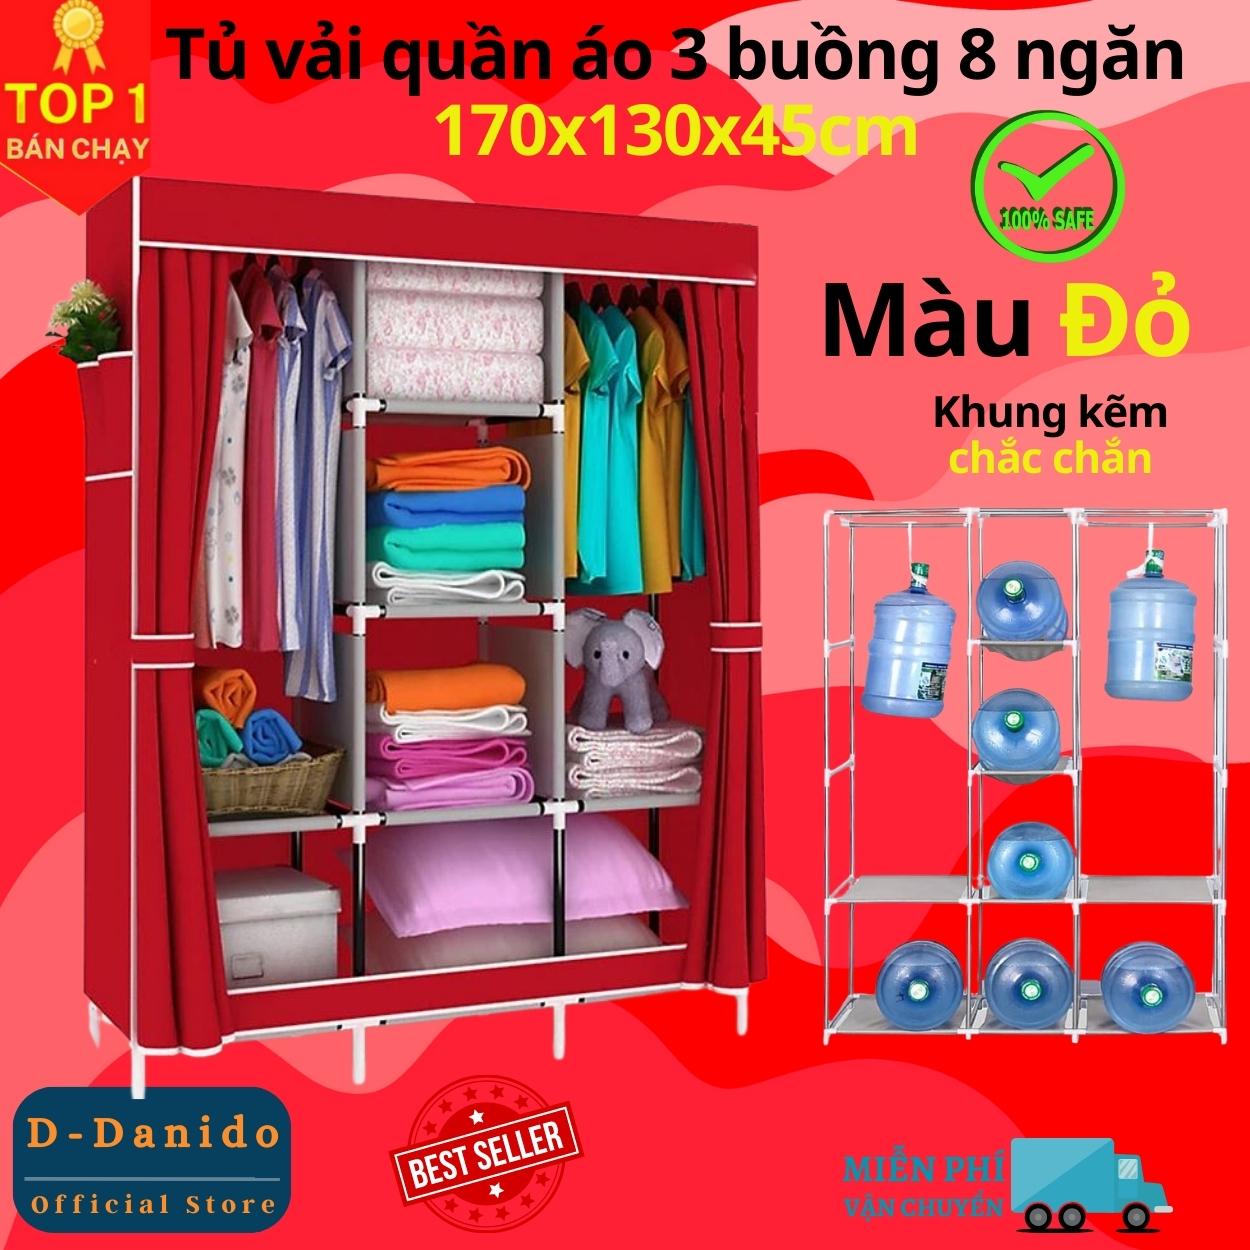 Tủ quần áo 3 buồng 8 ngăn cao cấp thế hệ mới, Tủ vải quần áo khung Inox vững chắc chất lượng cao - Hàng chính hãng D Danido